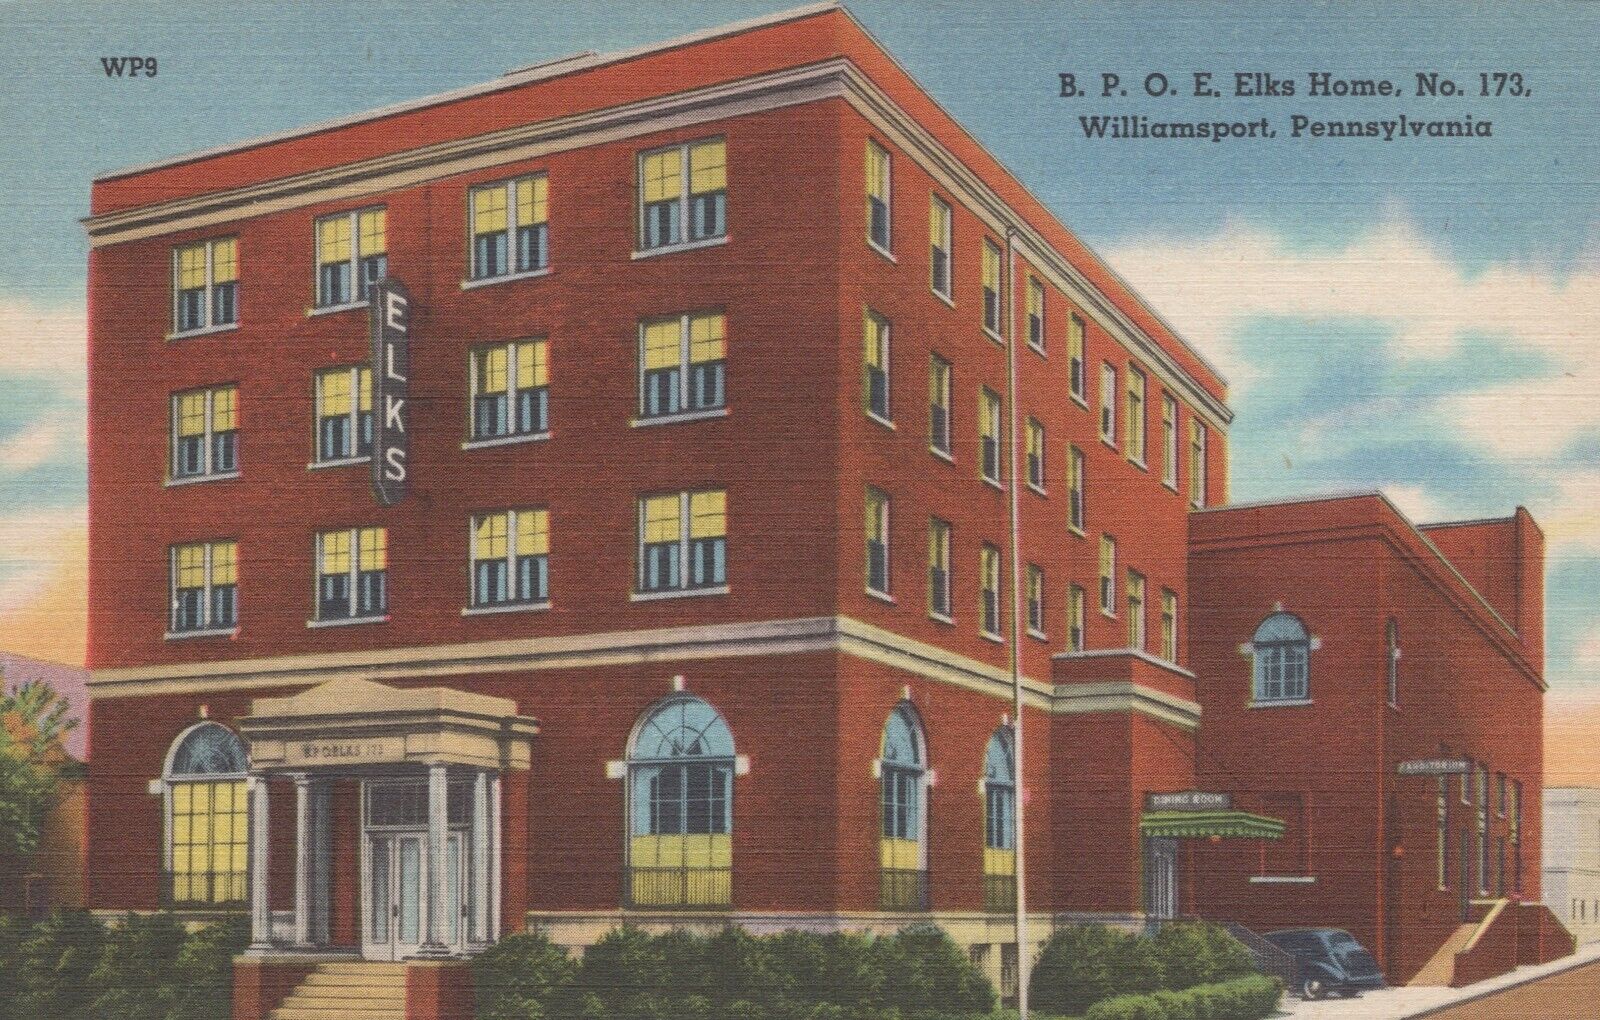 Williamsport Pennsylvania B.P.O.E. Elks Home No 173 Postcard